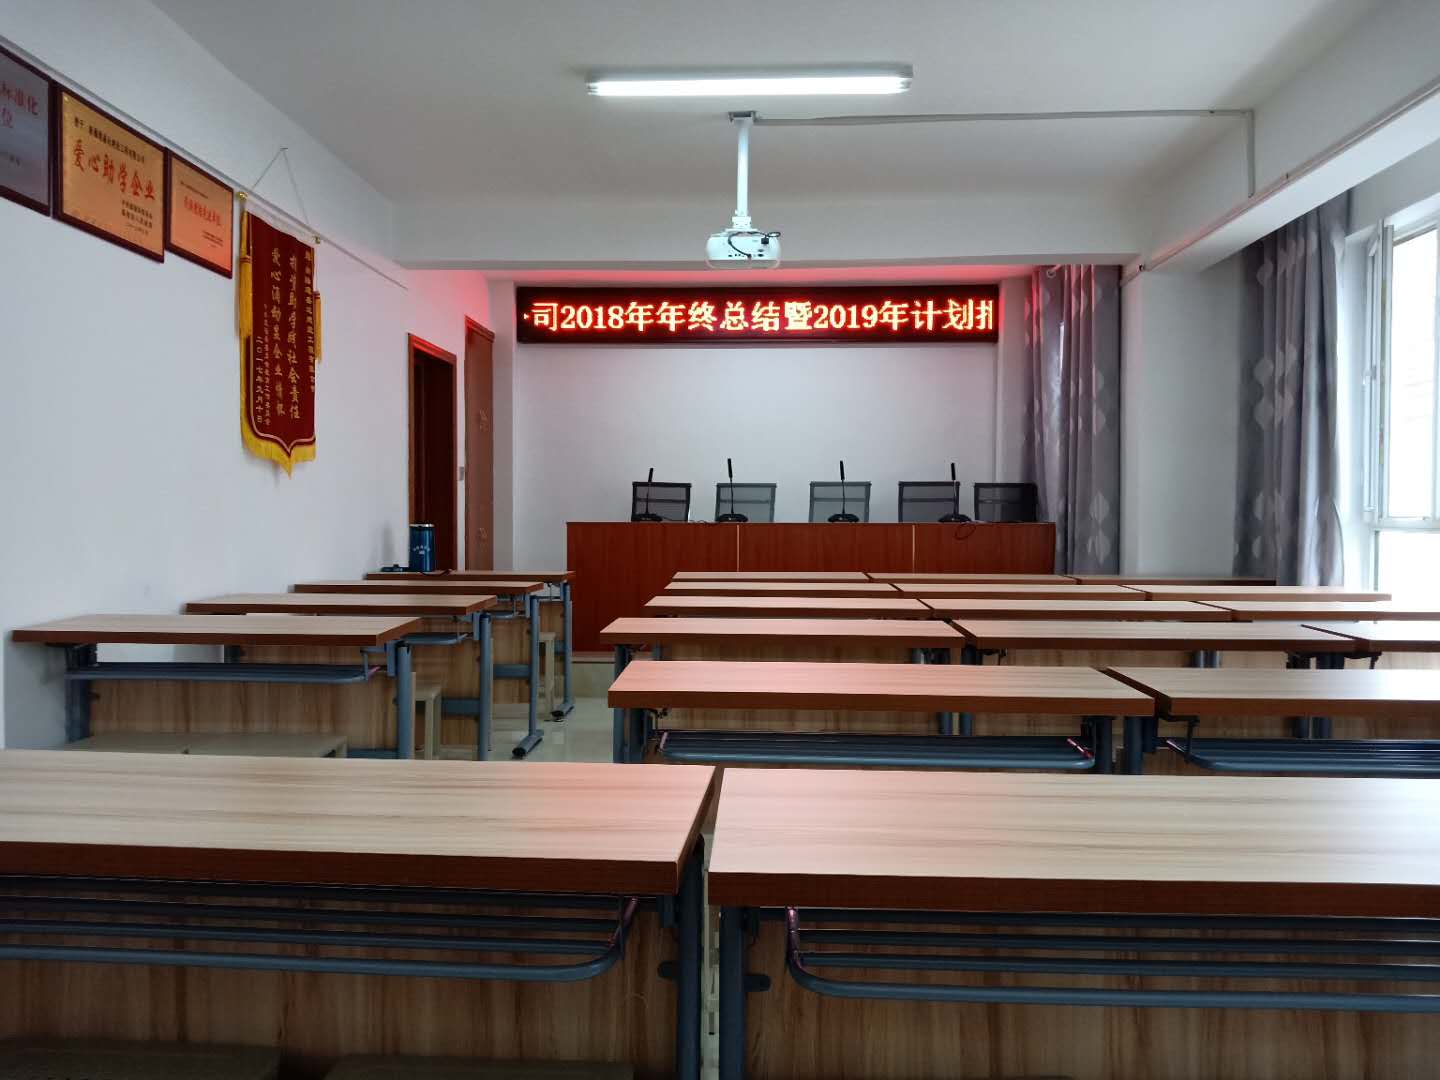 課堂教室